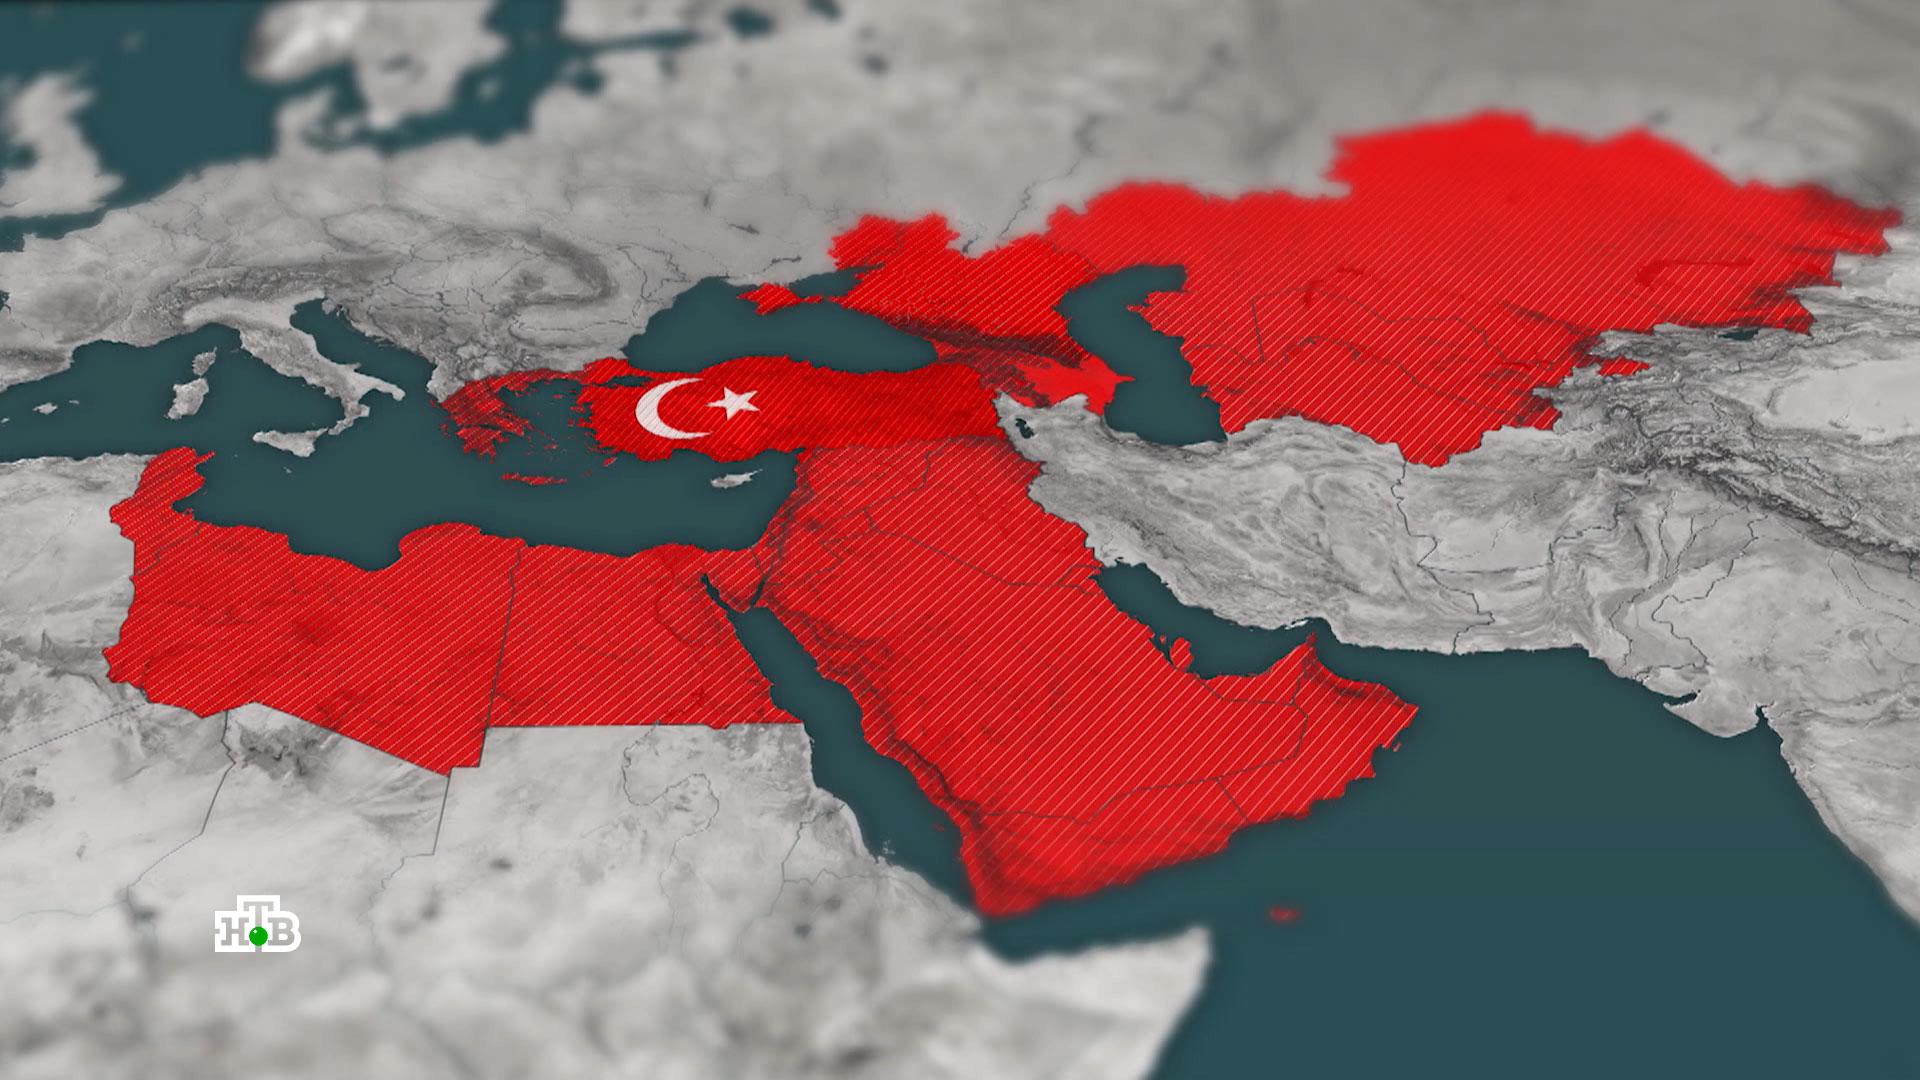 Карта тюркского мира подаренная эрдогану фото